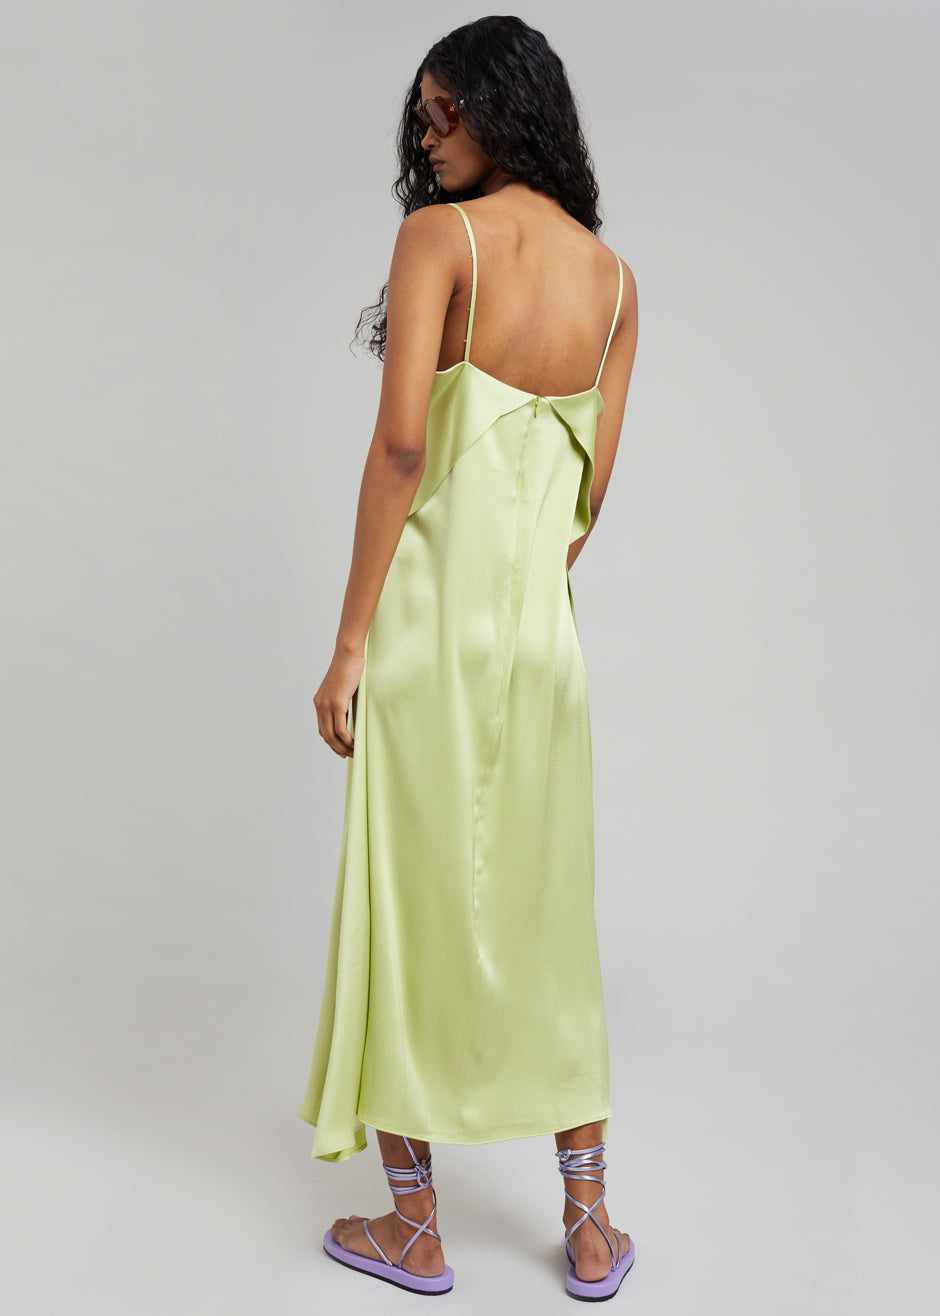 Cordelia Satin Dress - Lime - 5